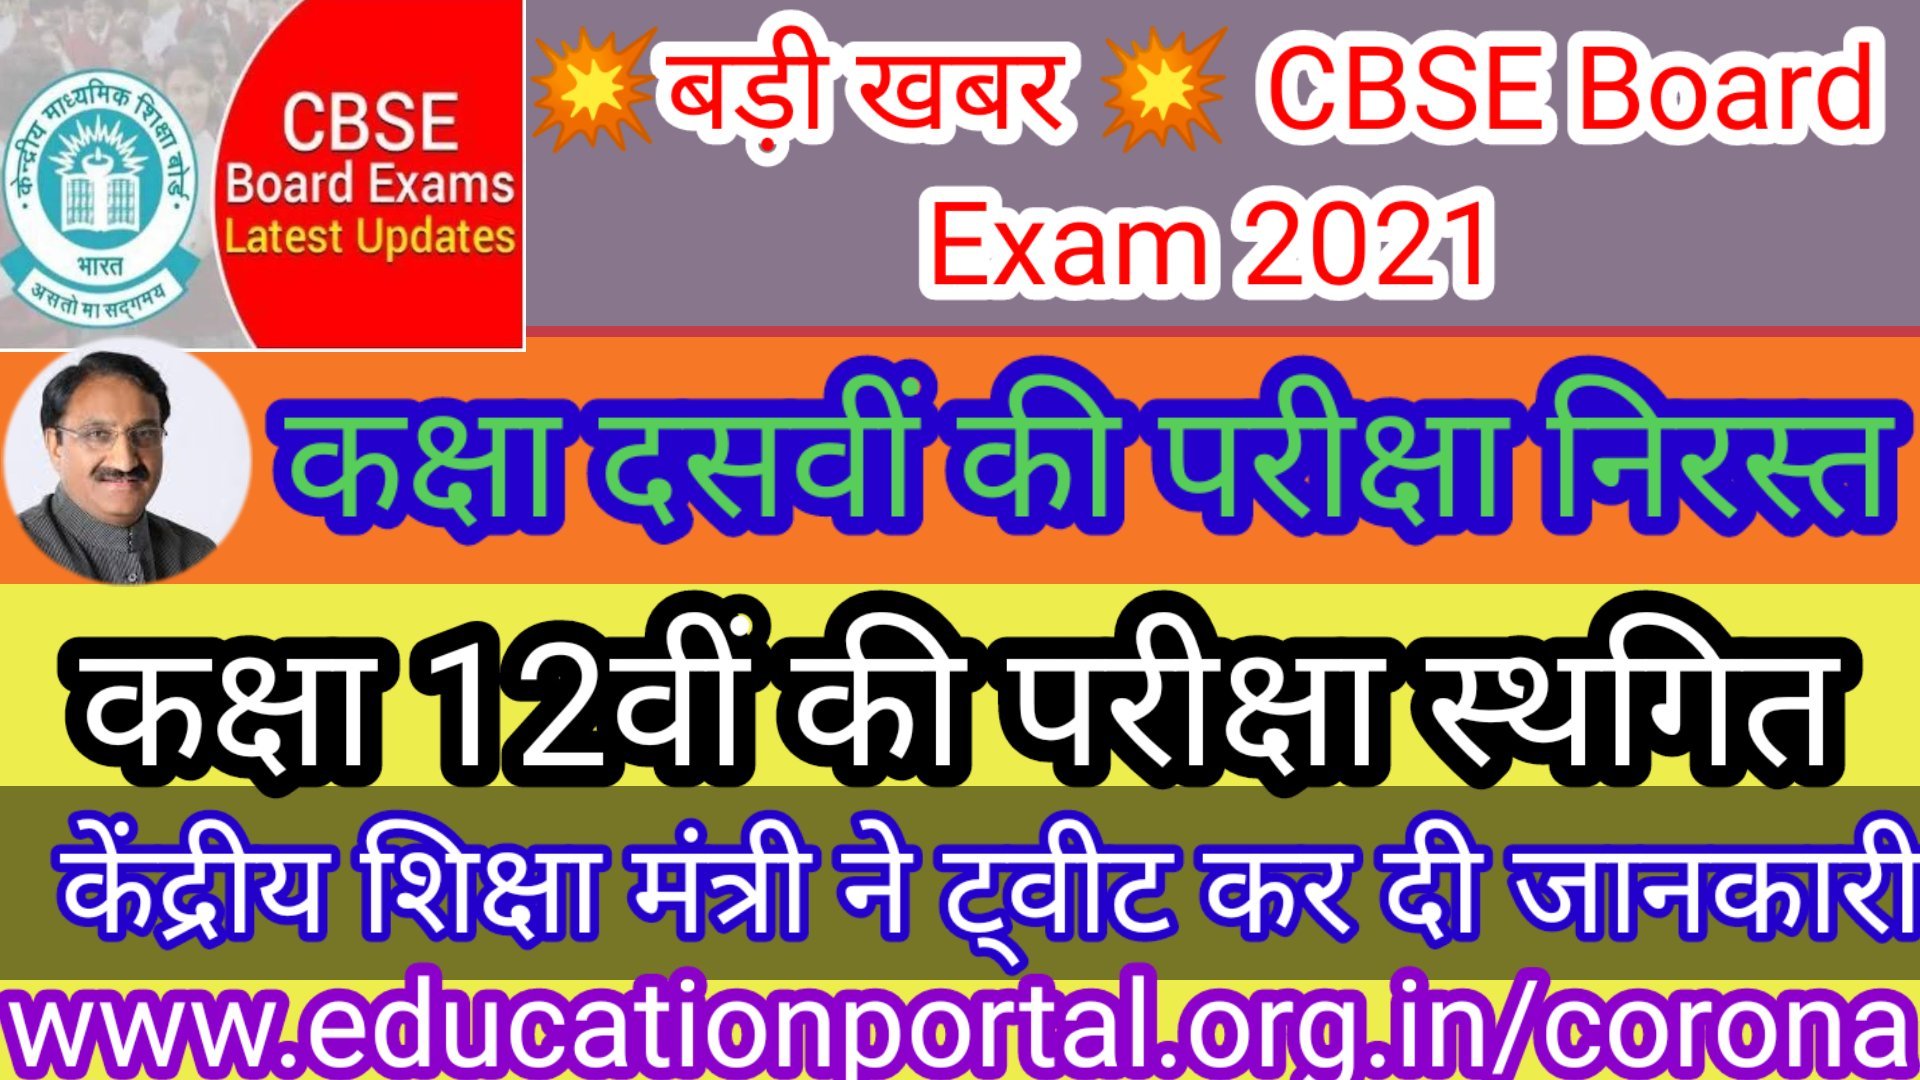 CBSE Board Exam 2021: प्रधानमंत्री नरेंद्र मोदी और शिक्षा मंत्री रमेश पोखिरयाल निशंक (Education Minister Ramesh Pokhriyal Nishank) के बीच चल रही बैठक खत्म हो गई है. कोरोना के बढ़ते मामलों के बीच आगामी बोर्ड परीक्षा होगी या नहीं, इसको लेकर बड़ा फैसला लिया गया है. 10वीं की परीक्षा रद्द (CBSE 10th Exam Cancelled), 12वीं की परीक्षा स्थगित (CBSE 12th Exam Postponed) हो गई है. हालांकि, अभी यह तय नहीं है कि 10वीं के छात्रों का मूल्यांकन किस आधार पर होगा.सीबीएसई बोर्ड परीक्षा को रद्द (CBSE Board Exam Cancelled) करने की मांग तेजी से बढ़ती नजर आ रही है. देश में कोरोना की हालत को देखते हुए दिल्ली के मुख्यमंत्री अरविन्द केजरीवाल, पंजाब के मुख्यमंत्री कैप्टन अमरिंदर सिंह, कांग्रेस नेता प्रियंका गांधी और राहुल गांधी समेत कई बड़ी हस्तियों ने बोर्ड परीक्षा को स्थगित या रद्द करने की मांग की थी.